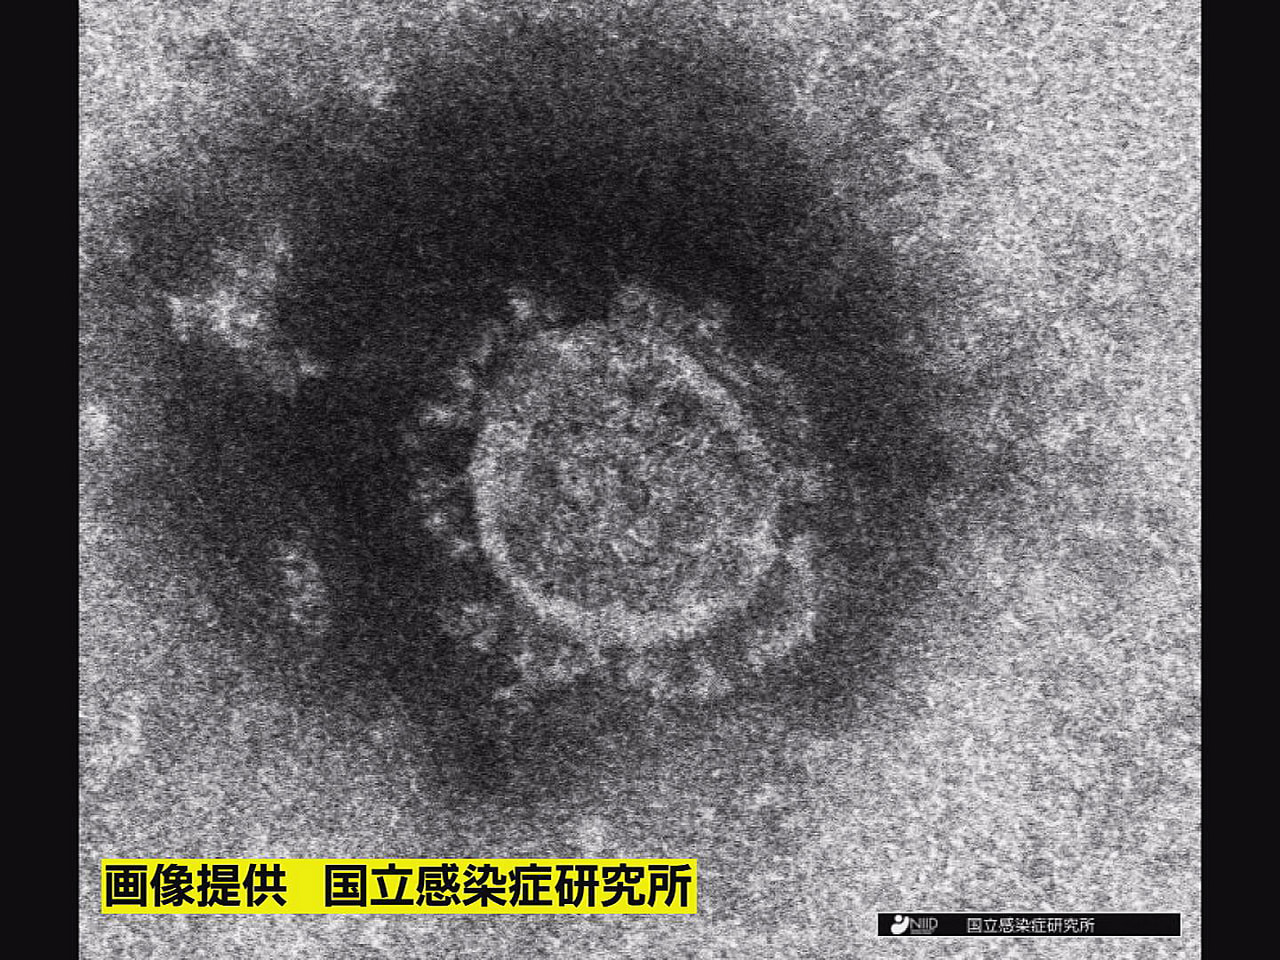 岐阜県は１5日、新型コロナウイルスの新規感染者が４２７人確認されたと発表しました...